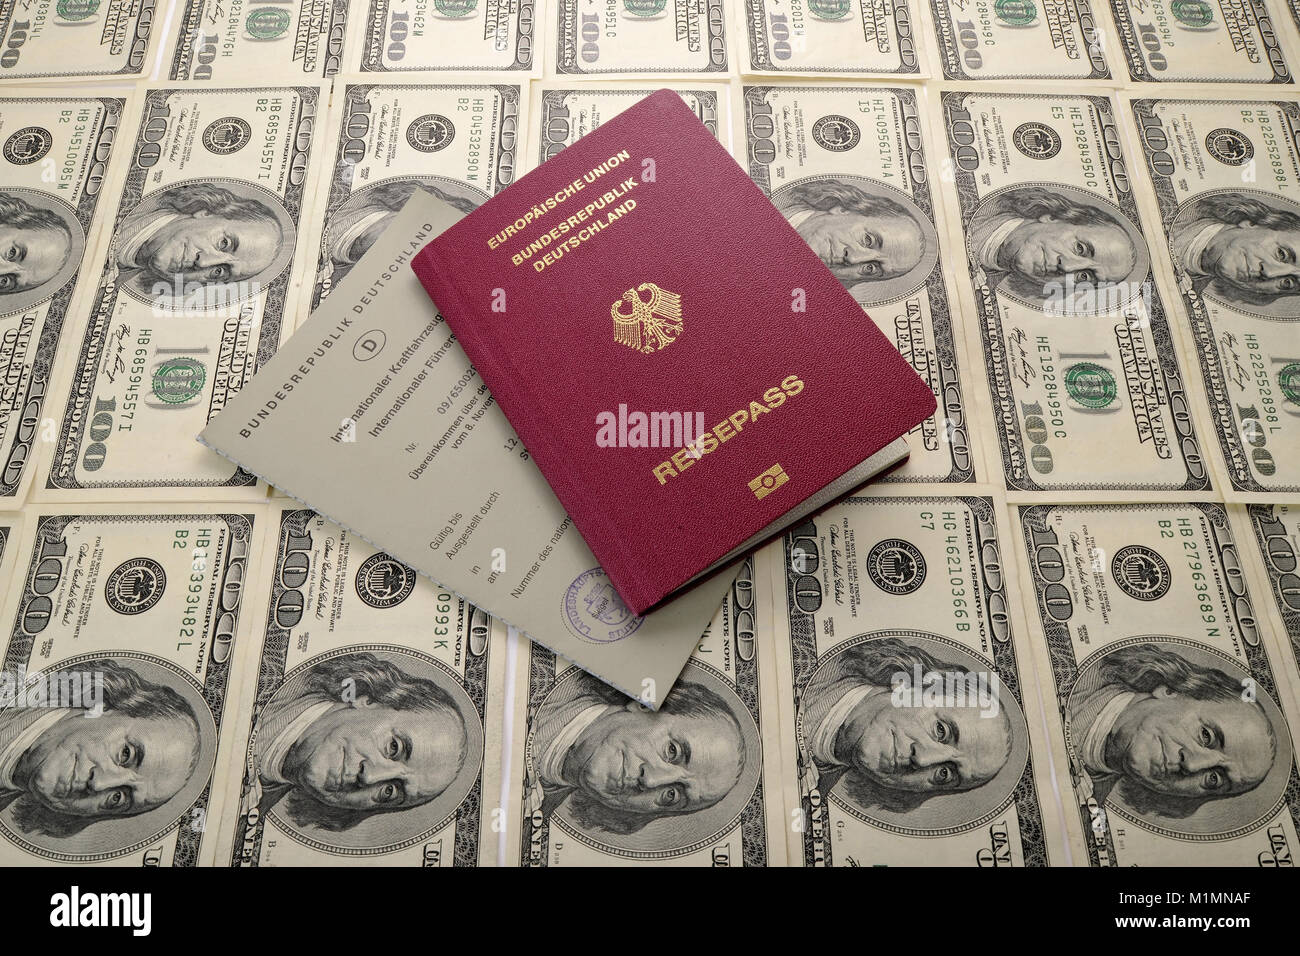 Dollar, passport, international driving license, Reisepass, Internationaler Führerschein Stock Photo